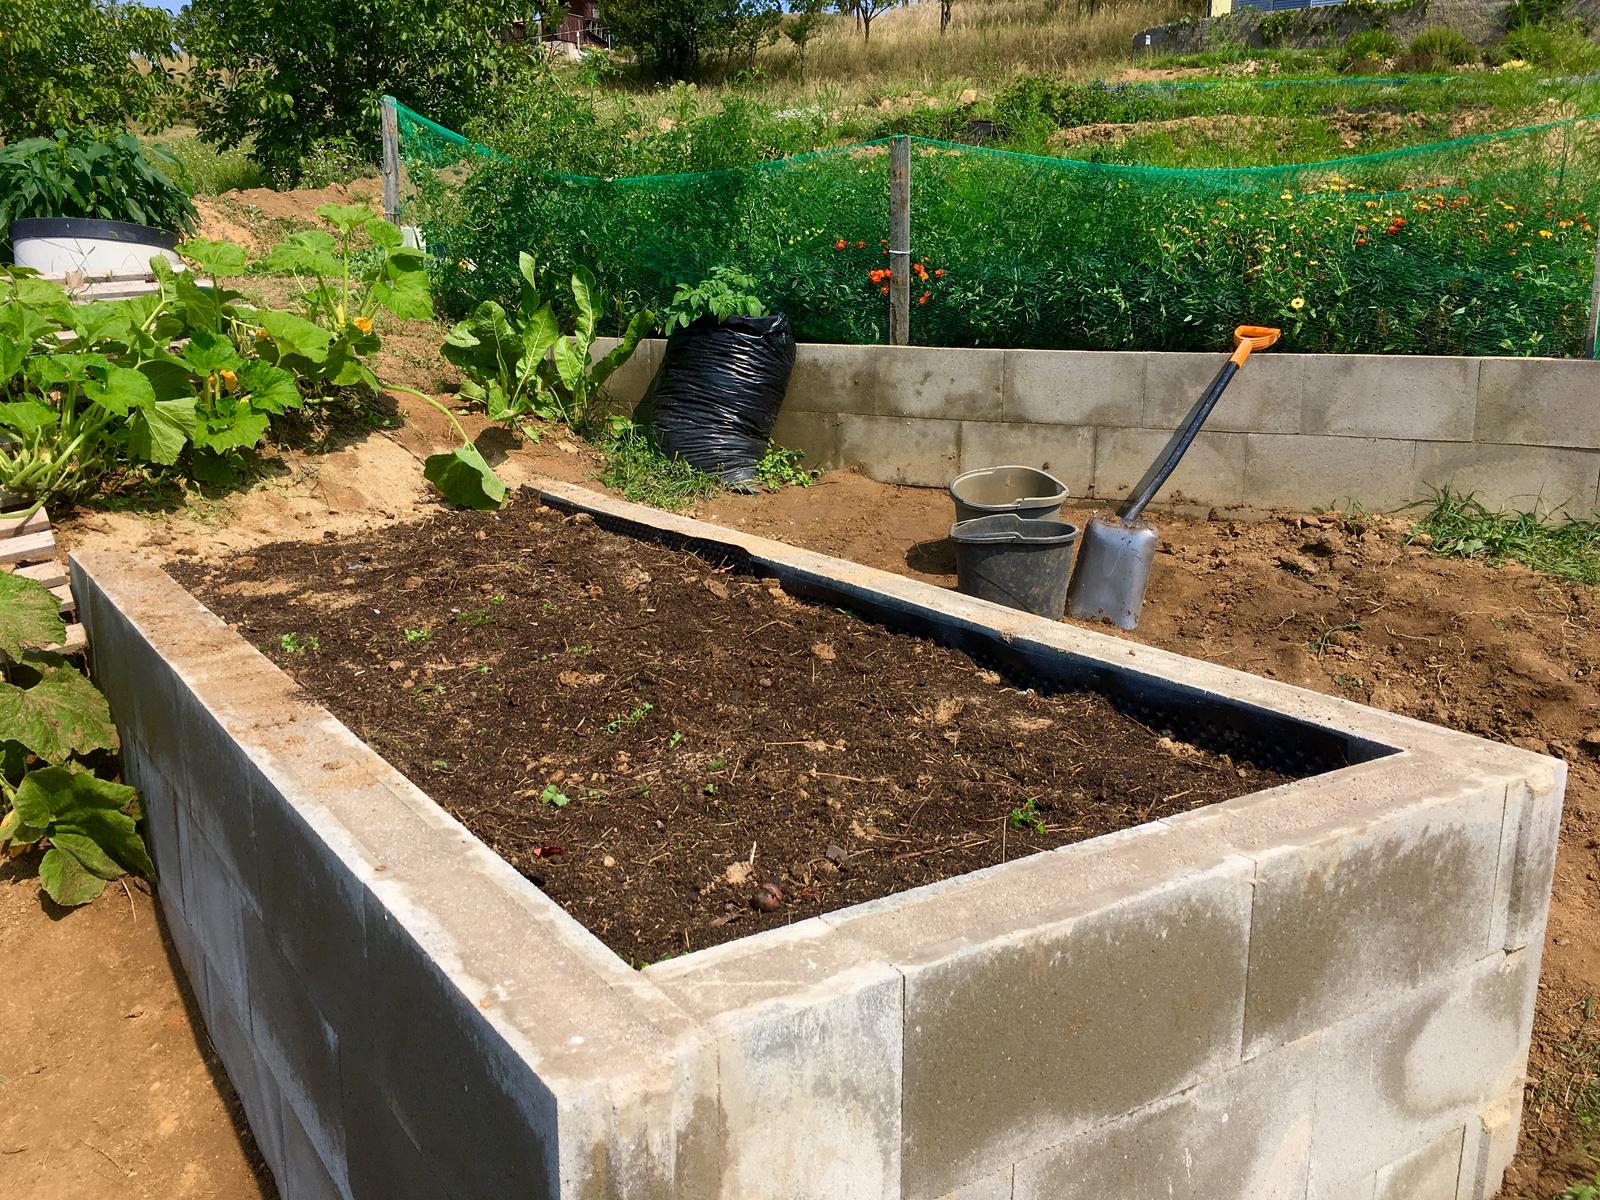 Skřítčí zahrada 2015 - 2020 - Srpen 2019 - nakonec přišly vrstvy hlíny, písku, popela, kompostu, ještě trochu hlíny dosypu, jak si to sedne ... a zaseju mrkev, červenou řepu, ředkvičky, ředkve, saláty, hrášek (s krátkou vegetační dobou) a kopr